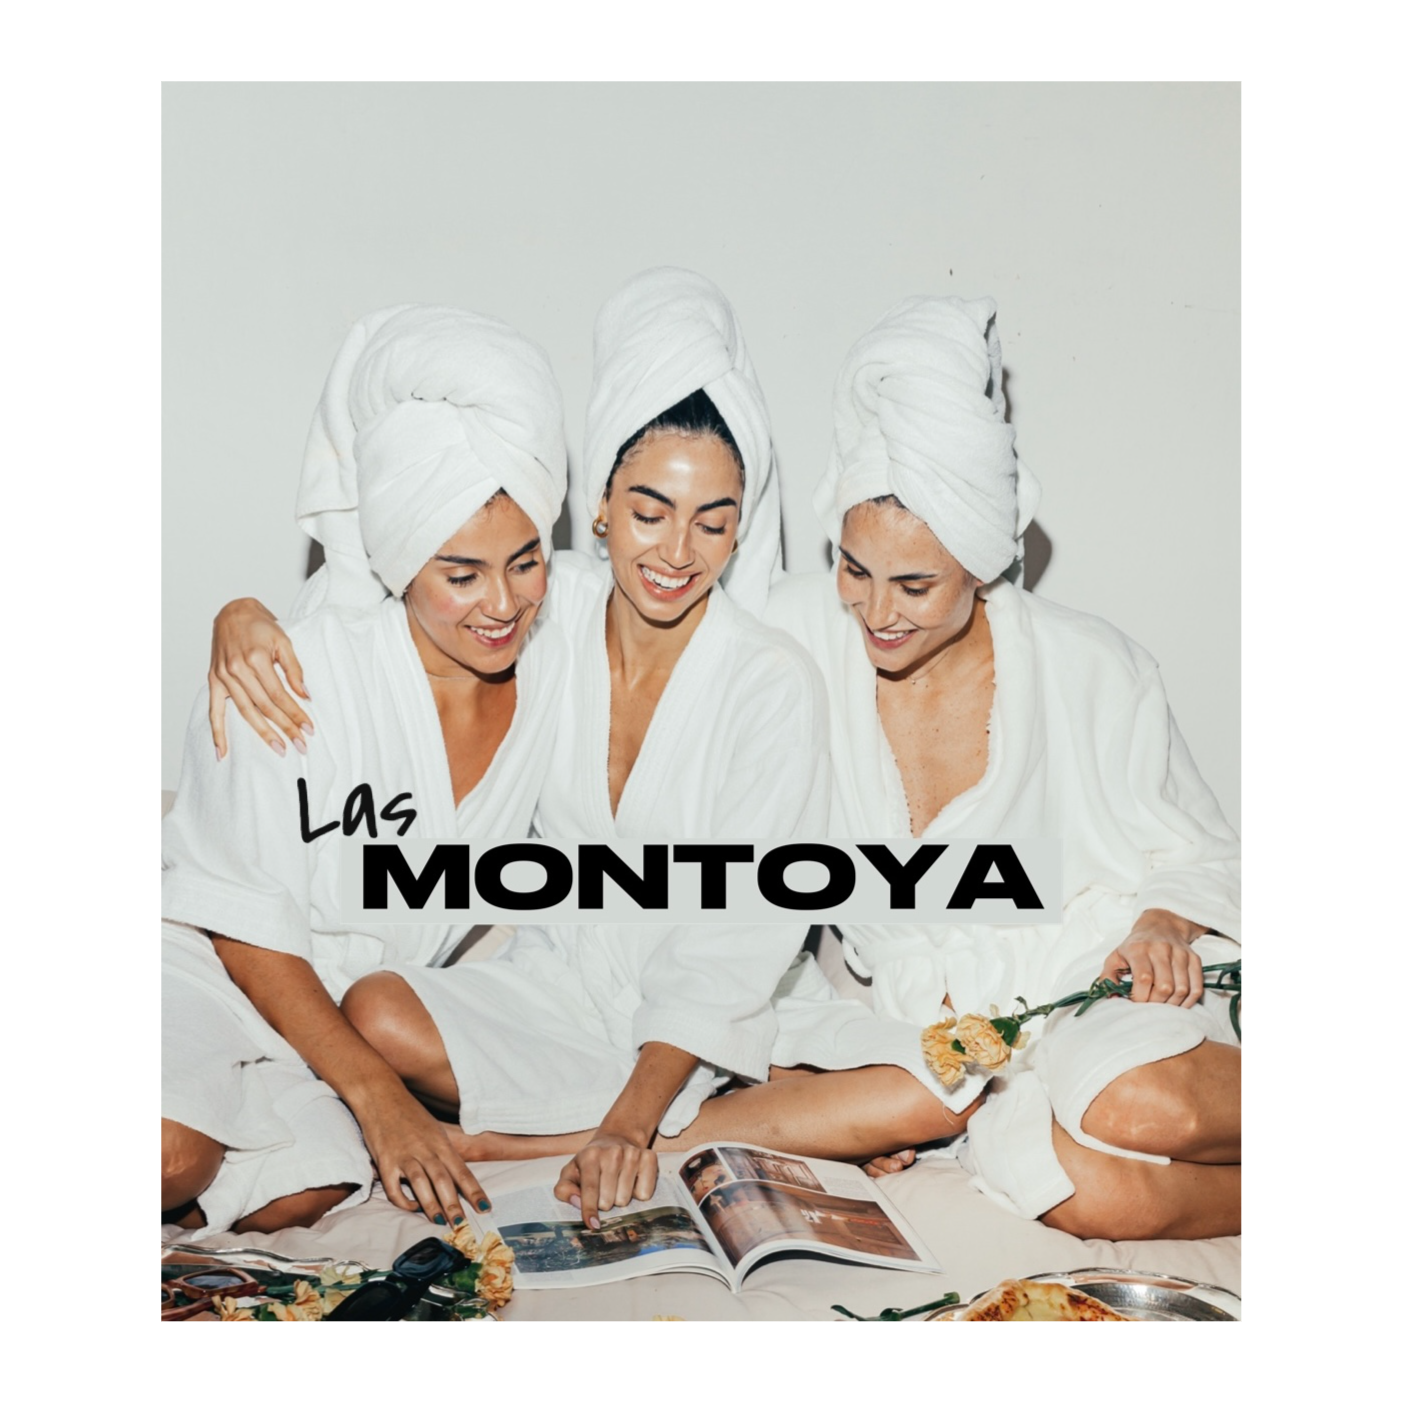 16. ¿Qué harían Las Montoya? | Las Montoya Podcast